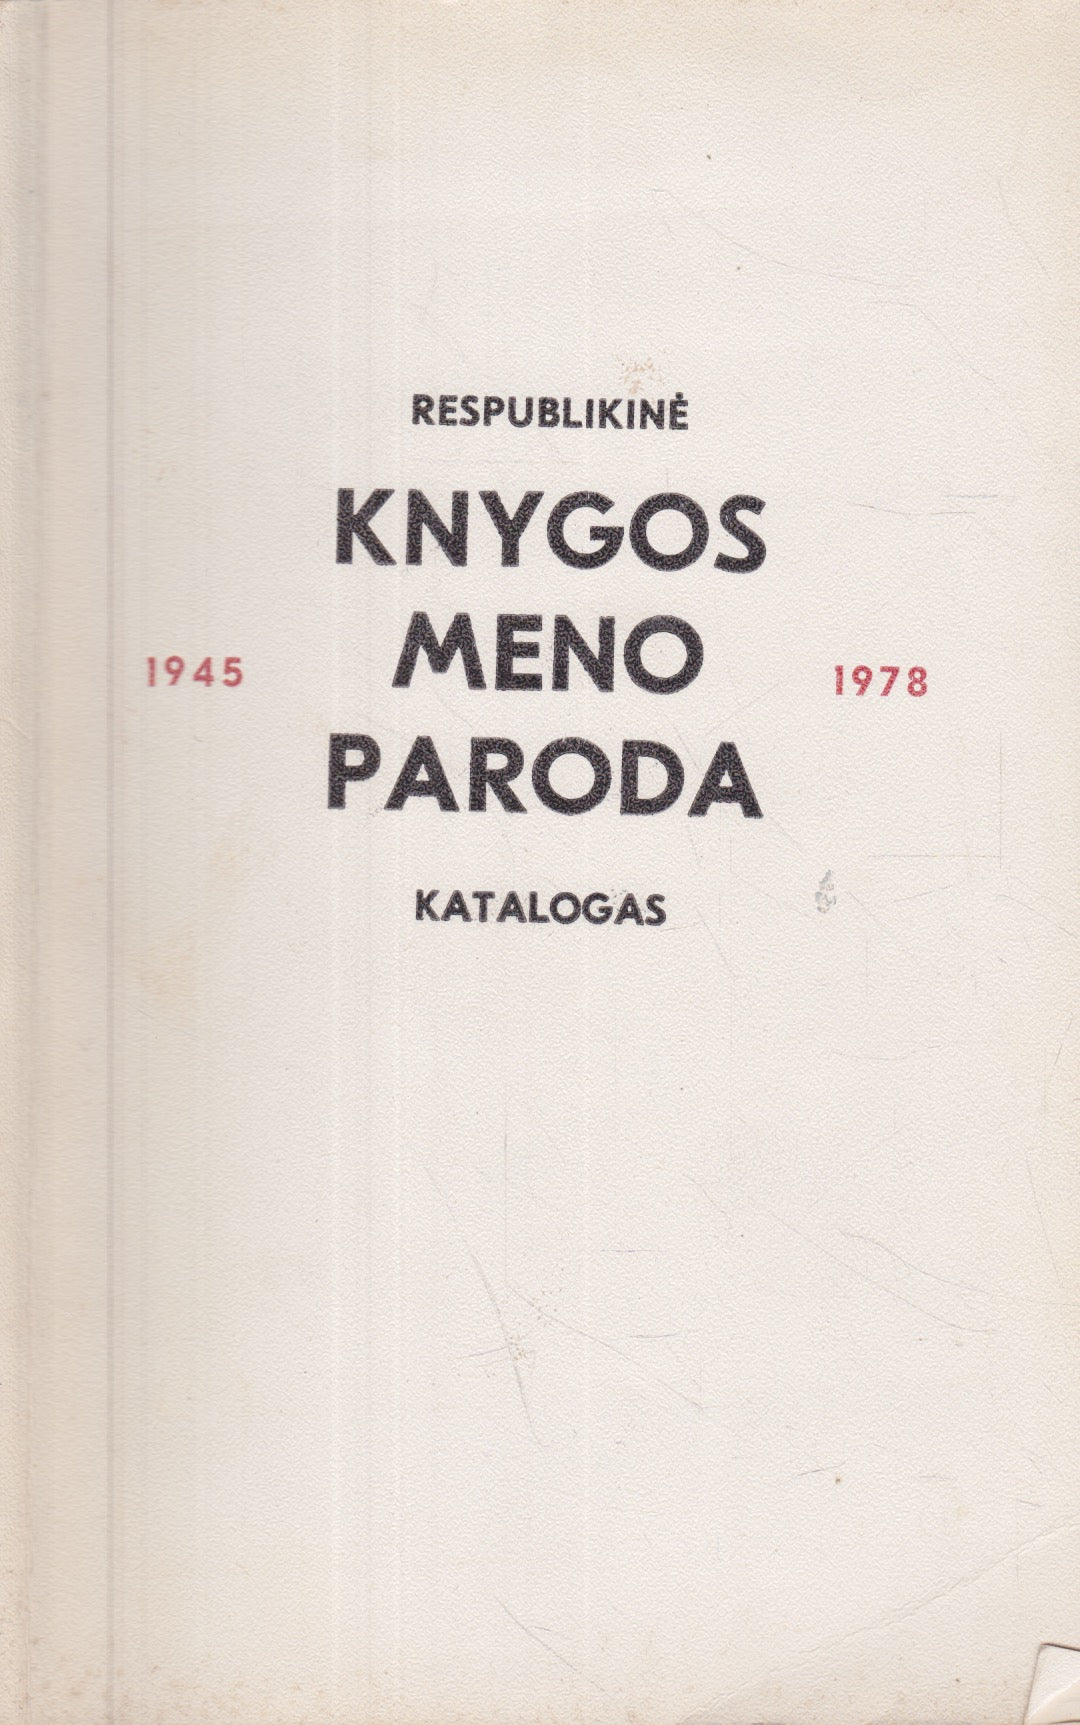 Respublikinė knygos meno paroda, 1945-1978: katalogas